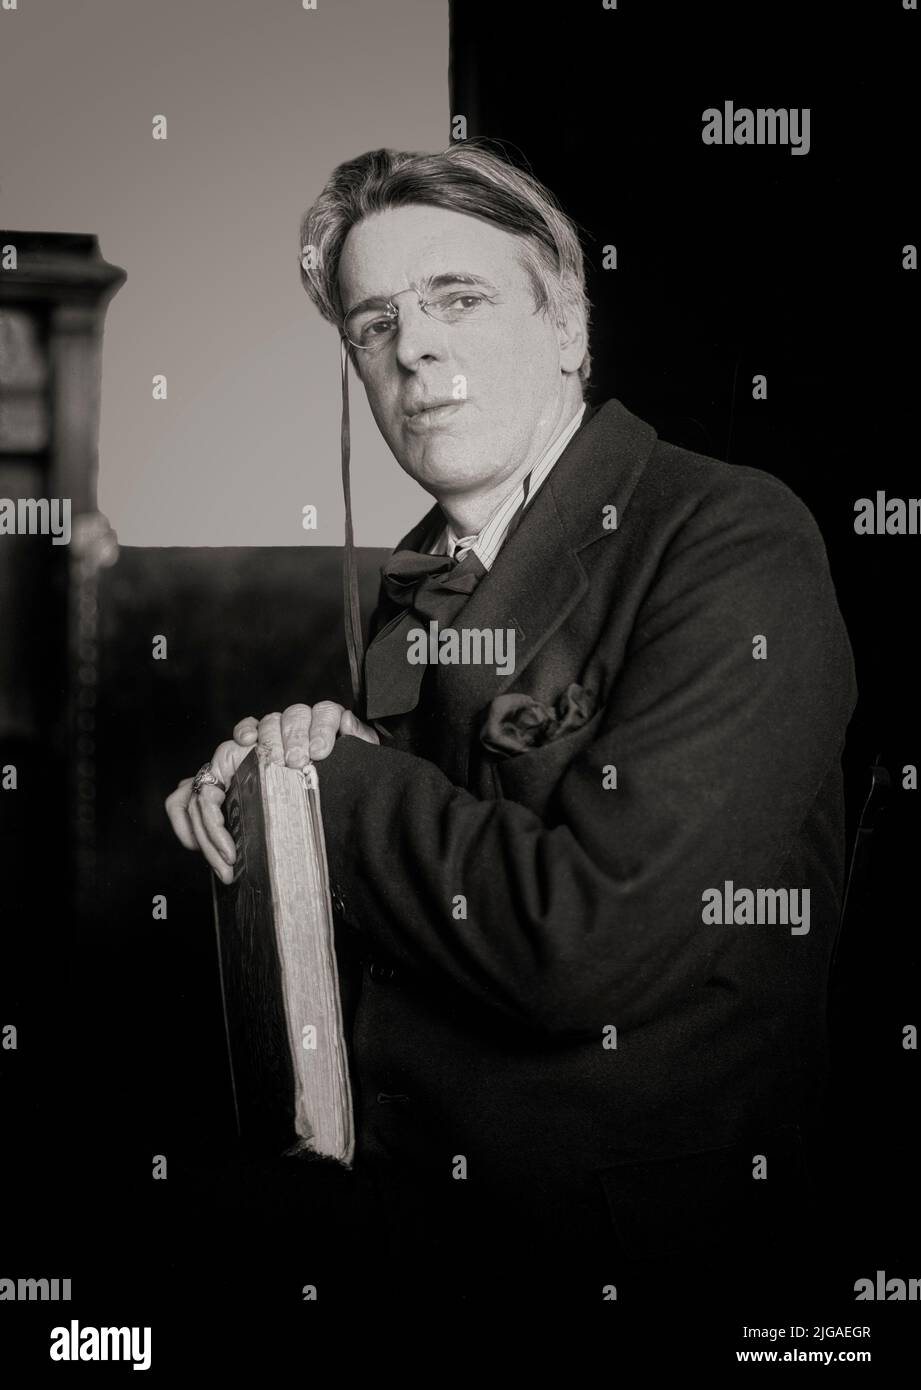 Ein Porträt von William Butler Yeats (1865-1939), einem Protestanten anglo-irischer Abstammung, irischem Dichter, Dramatiker, Schriftsteller und einer der bedeutendsten Persönlichkeiten der Literatur des 20.. Jahrhunderts. Er war eine treibende Kraft hinter dem Irish Literary Revival und wurde zu einem Pfeiler des irischen Literaturbetriebs, der zur Gründung des Abbey Theatre beitrug. In seinen späteren Jahren diente er zwei Mal als Senator des irischen Freistaates. Stockfoto